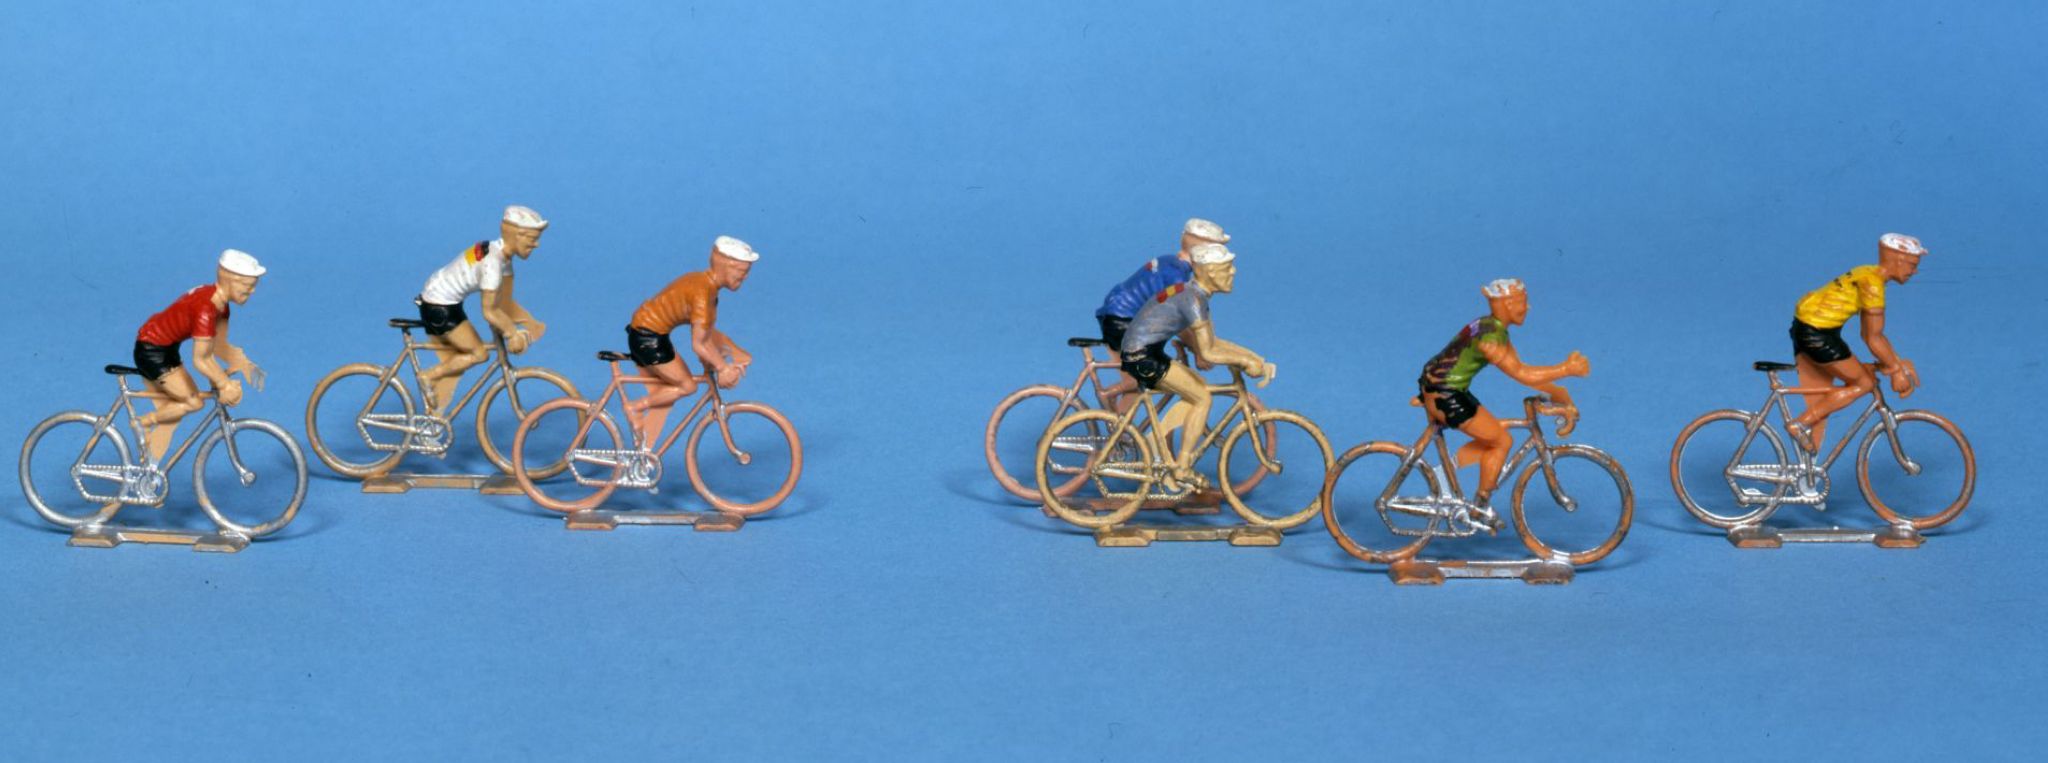 des modèles réduits de cyclistes